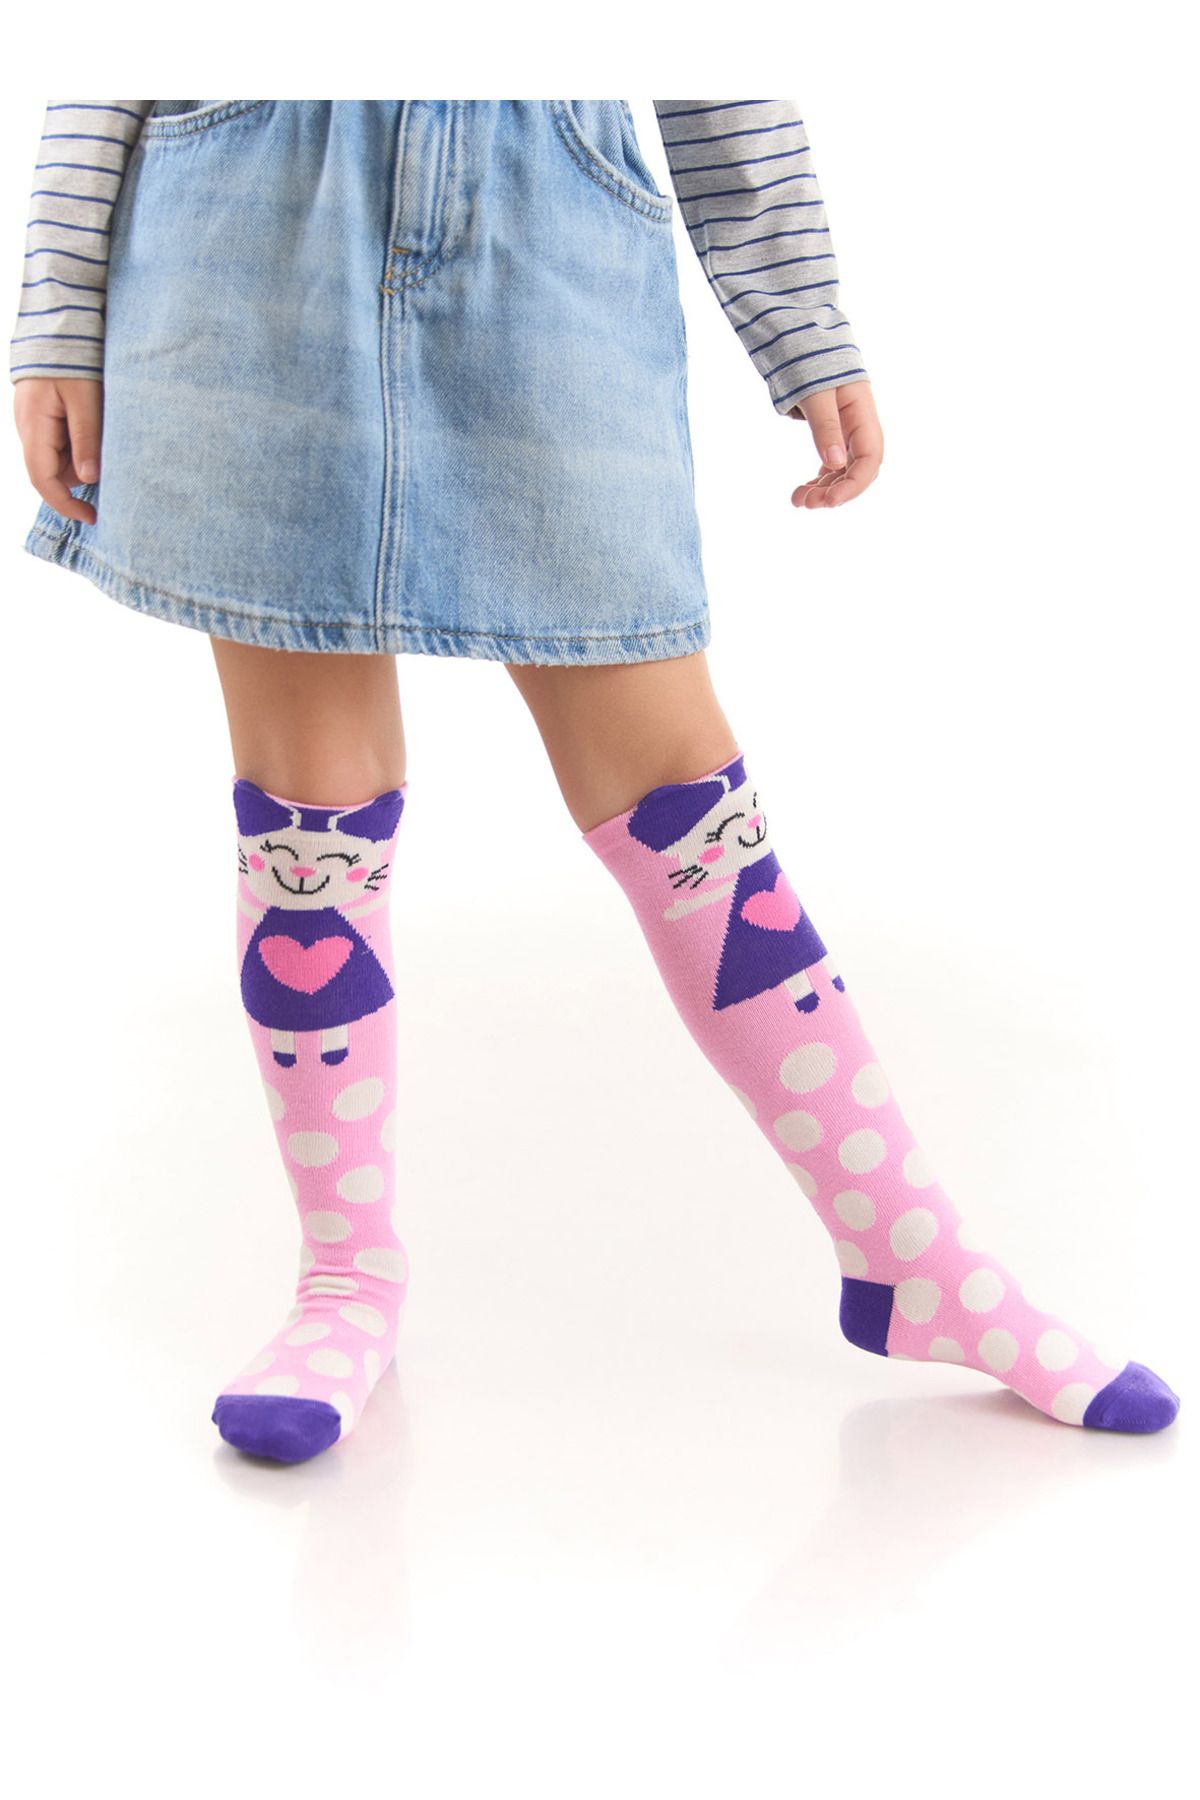 Denokids Yaramaz Kedi Kız Çocuk Pembe Dizaltı Çorap